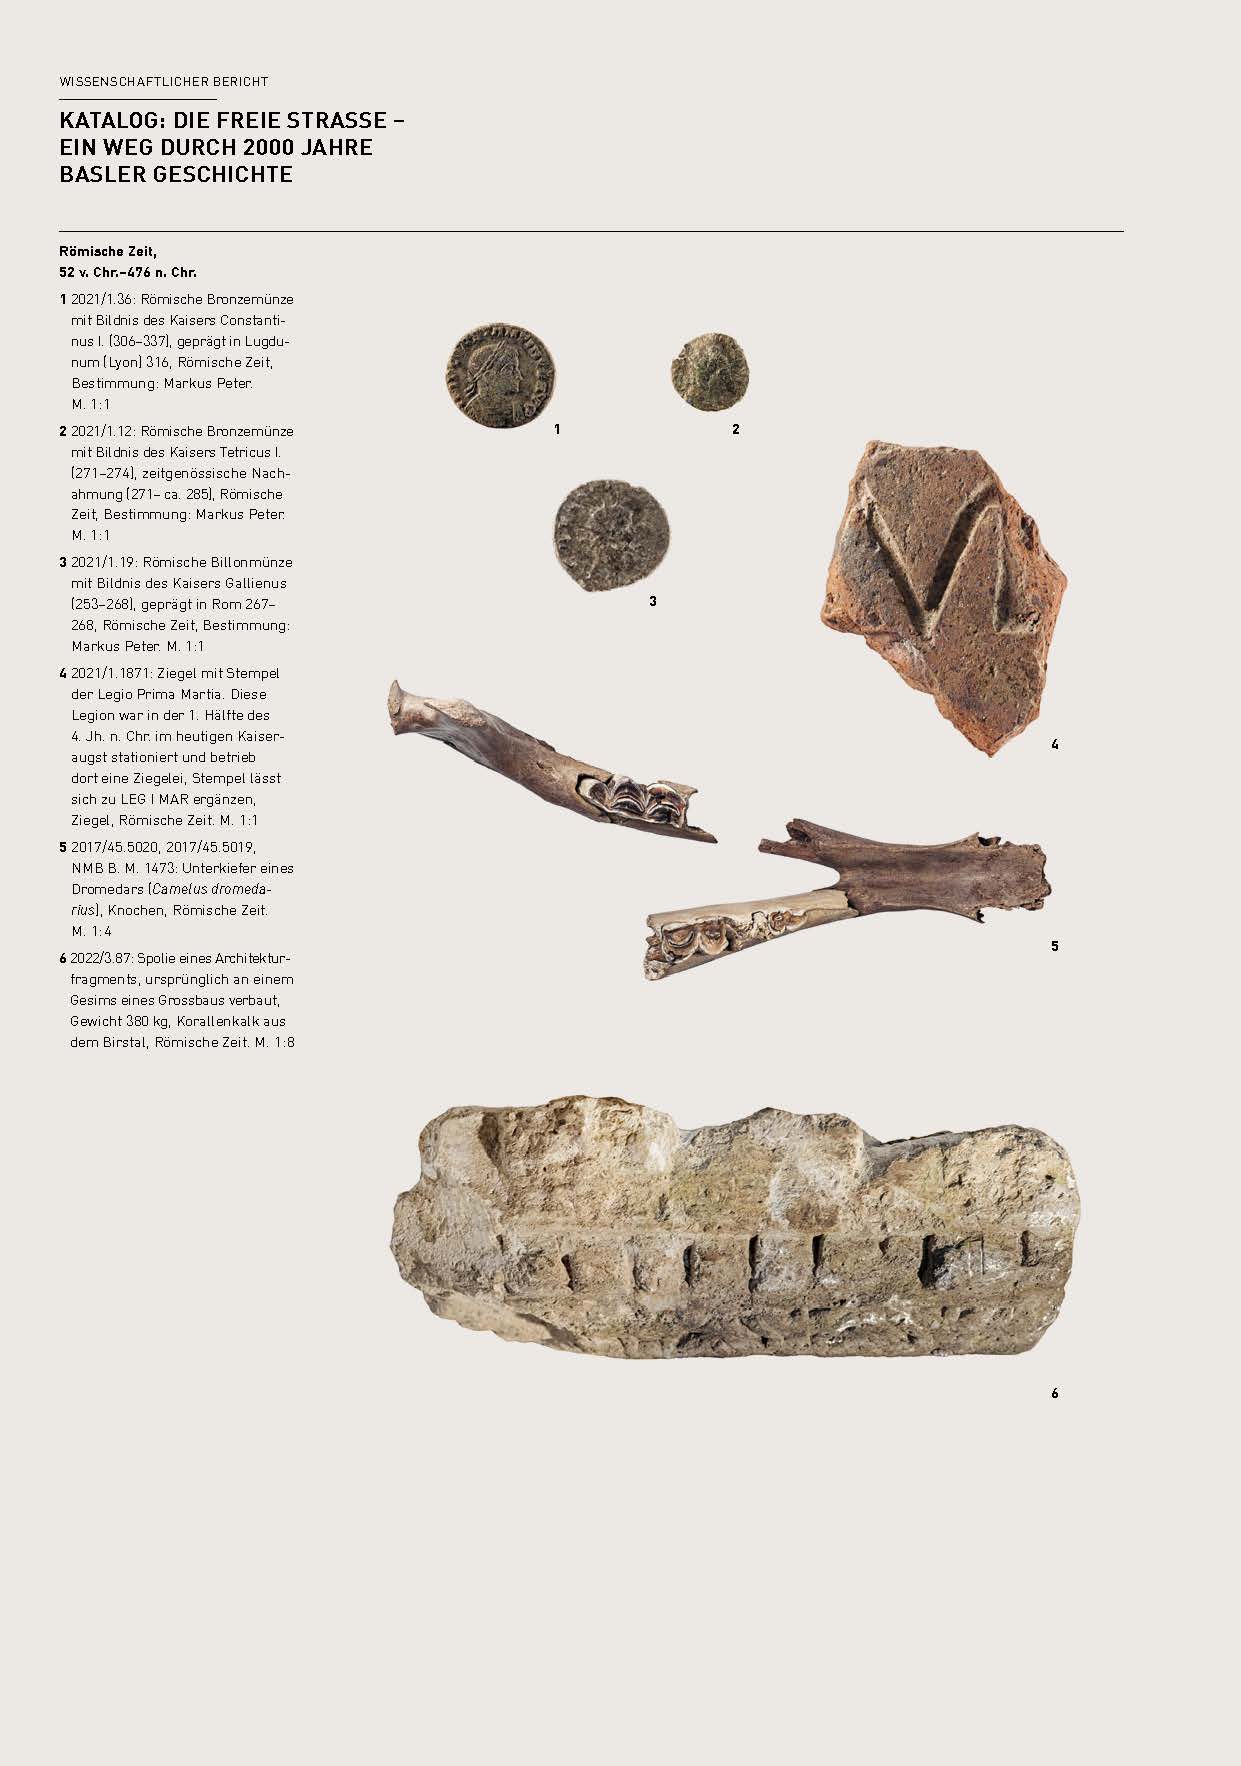 Römische Funde wie Münzen, Unterkiefer eines Dromedars, Ziegel mit Stempel der Legio Prima Martia und Architekturfragment werden auf der ersten Seite des Katalogs gezeigt.